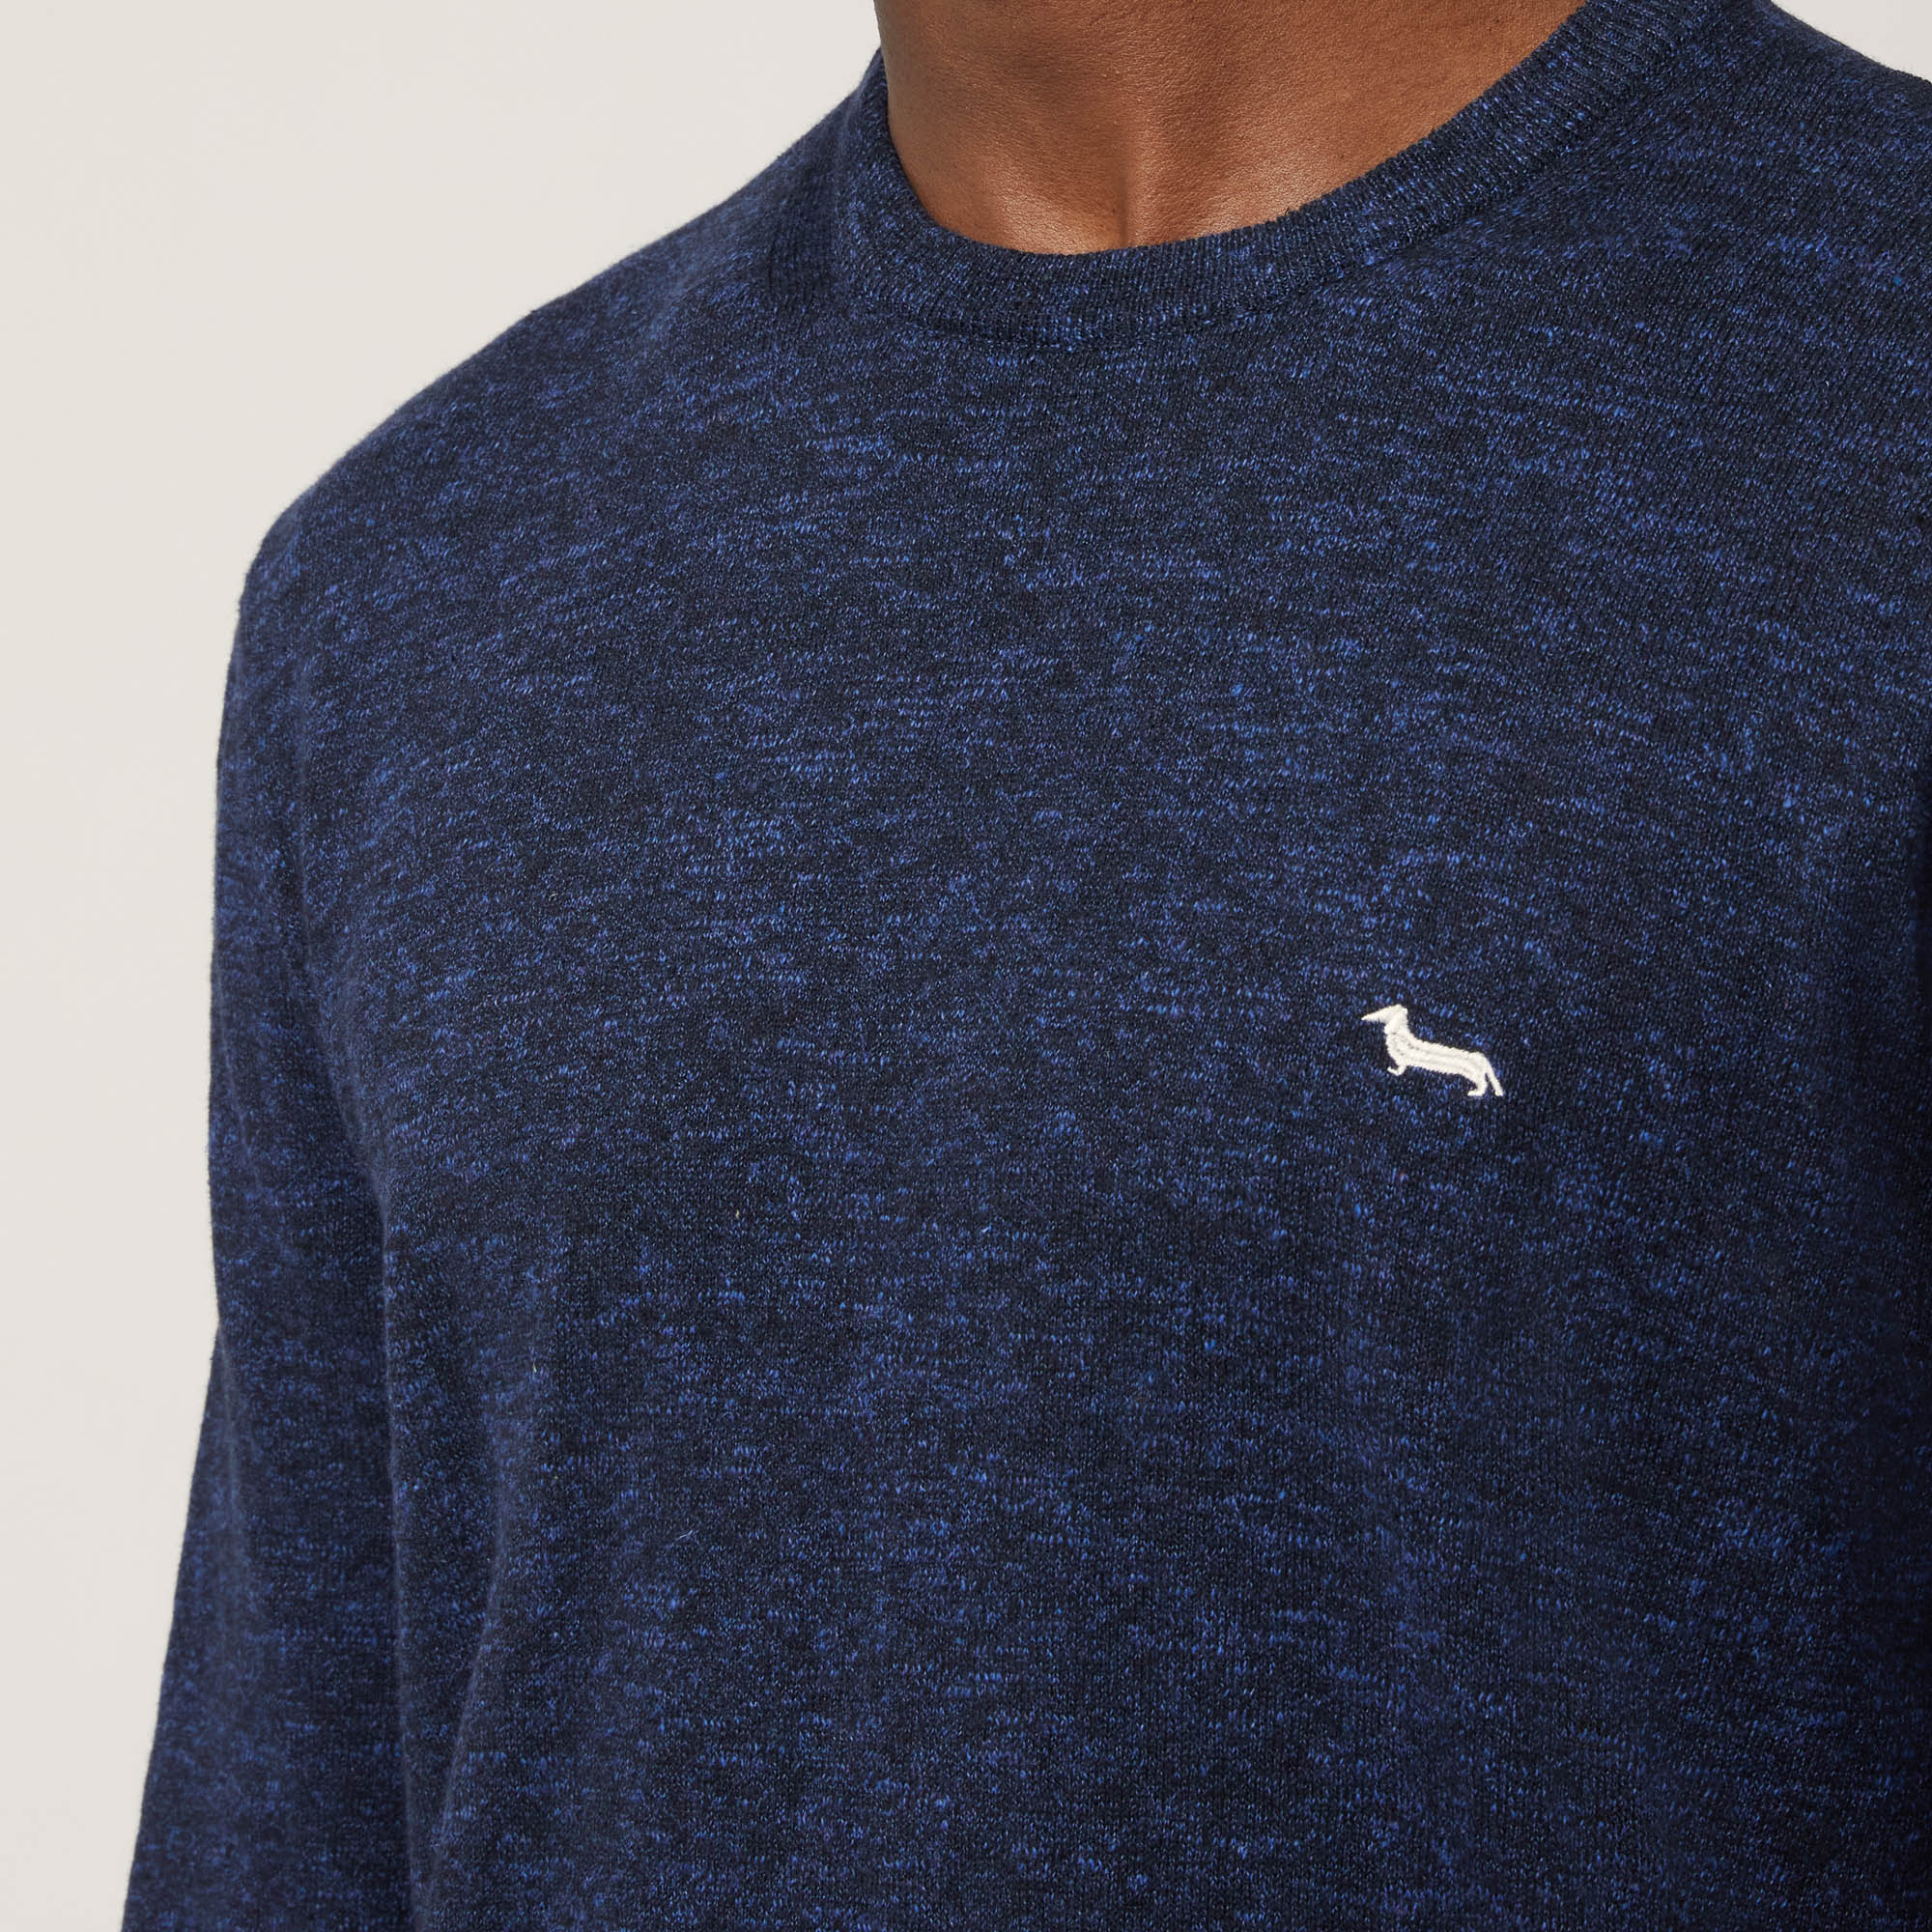 Pullover Mit Streifen-Details, Blau, large image number 2